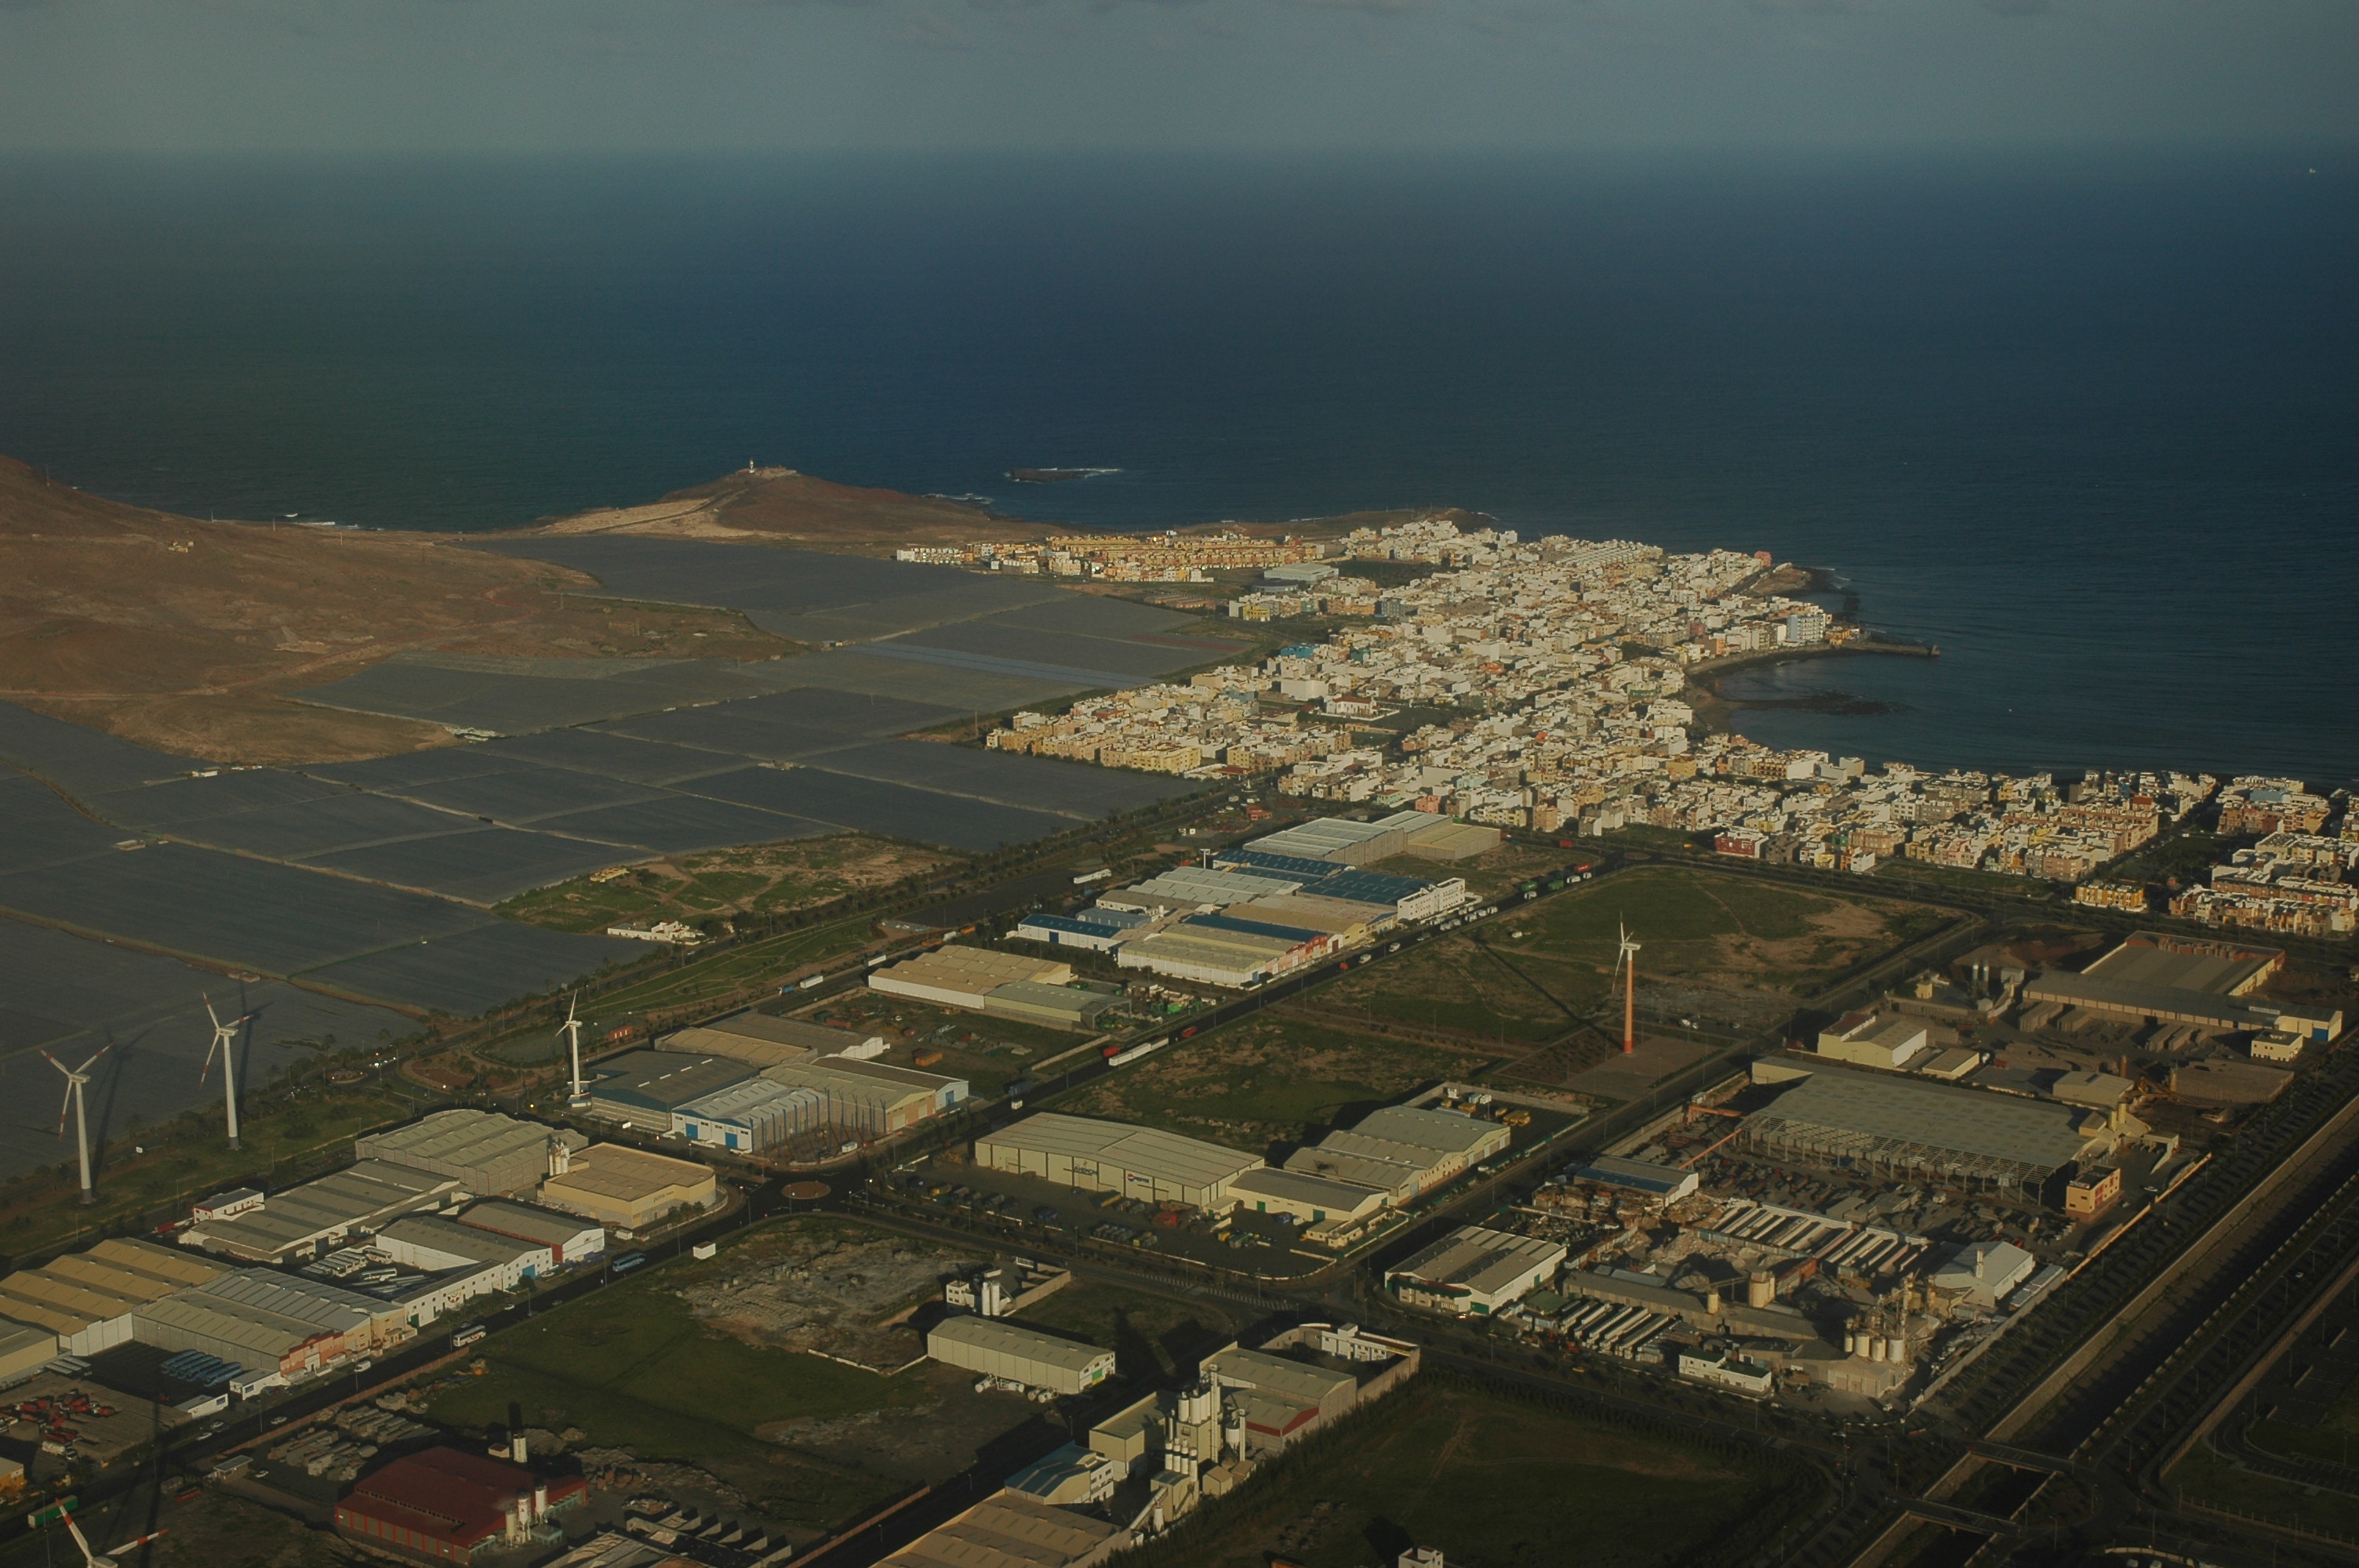 Arinaga Beach aerial view & part of industrial state-Gran Canaria